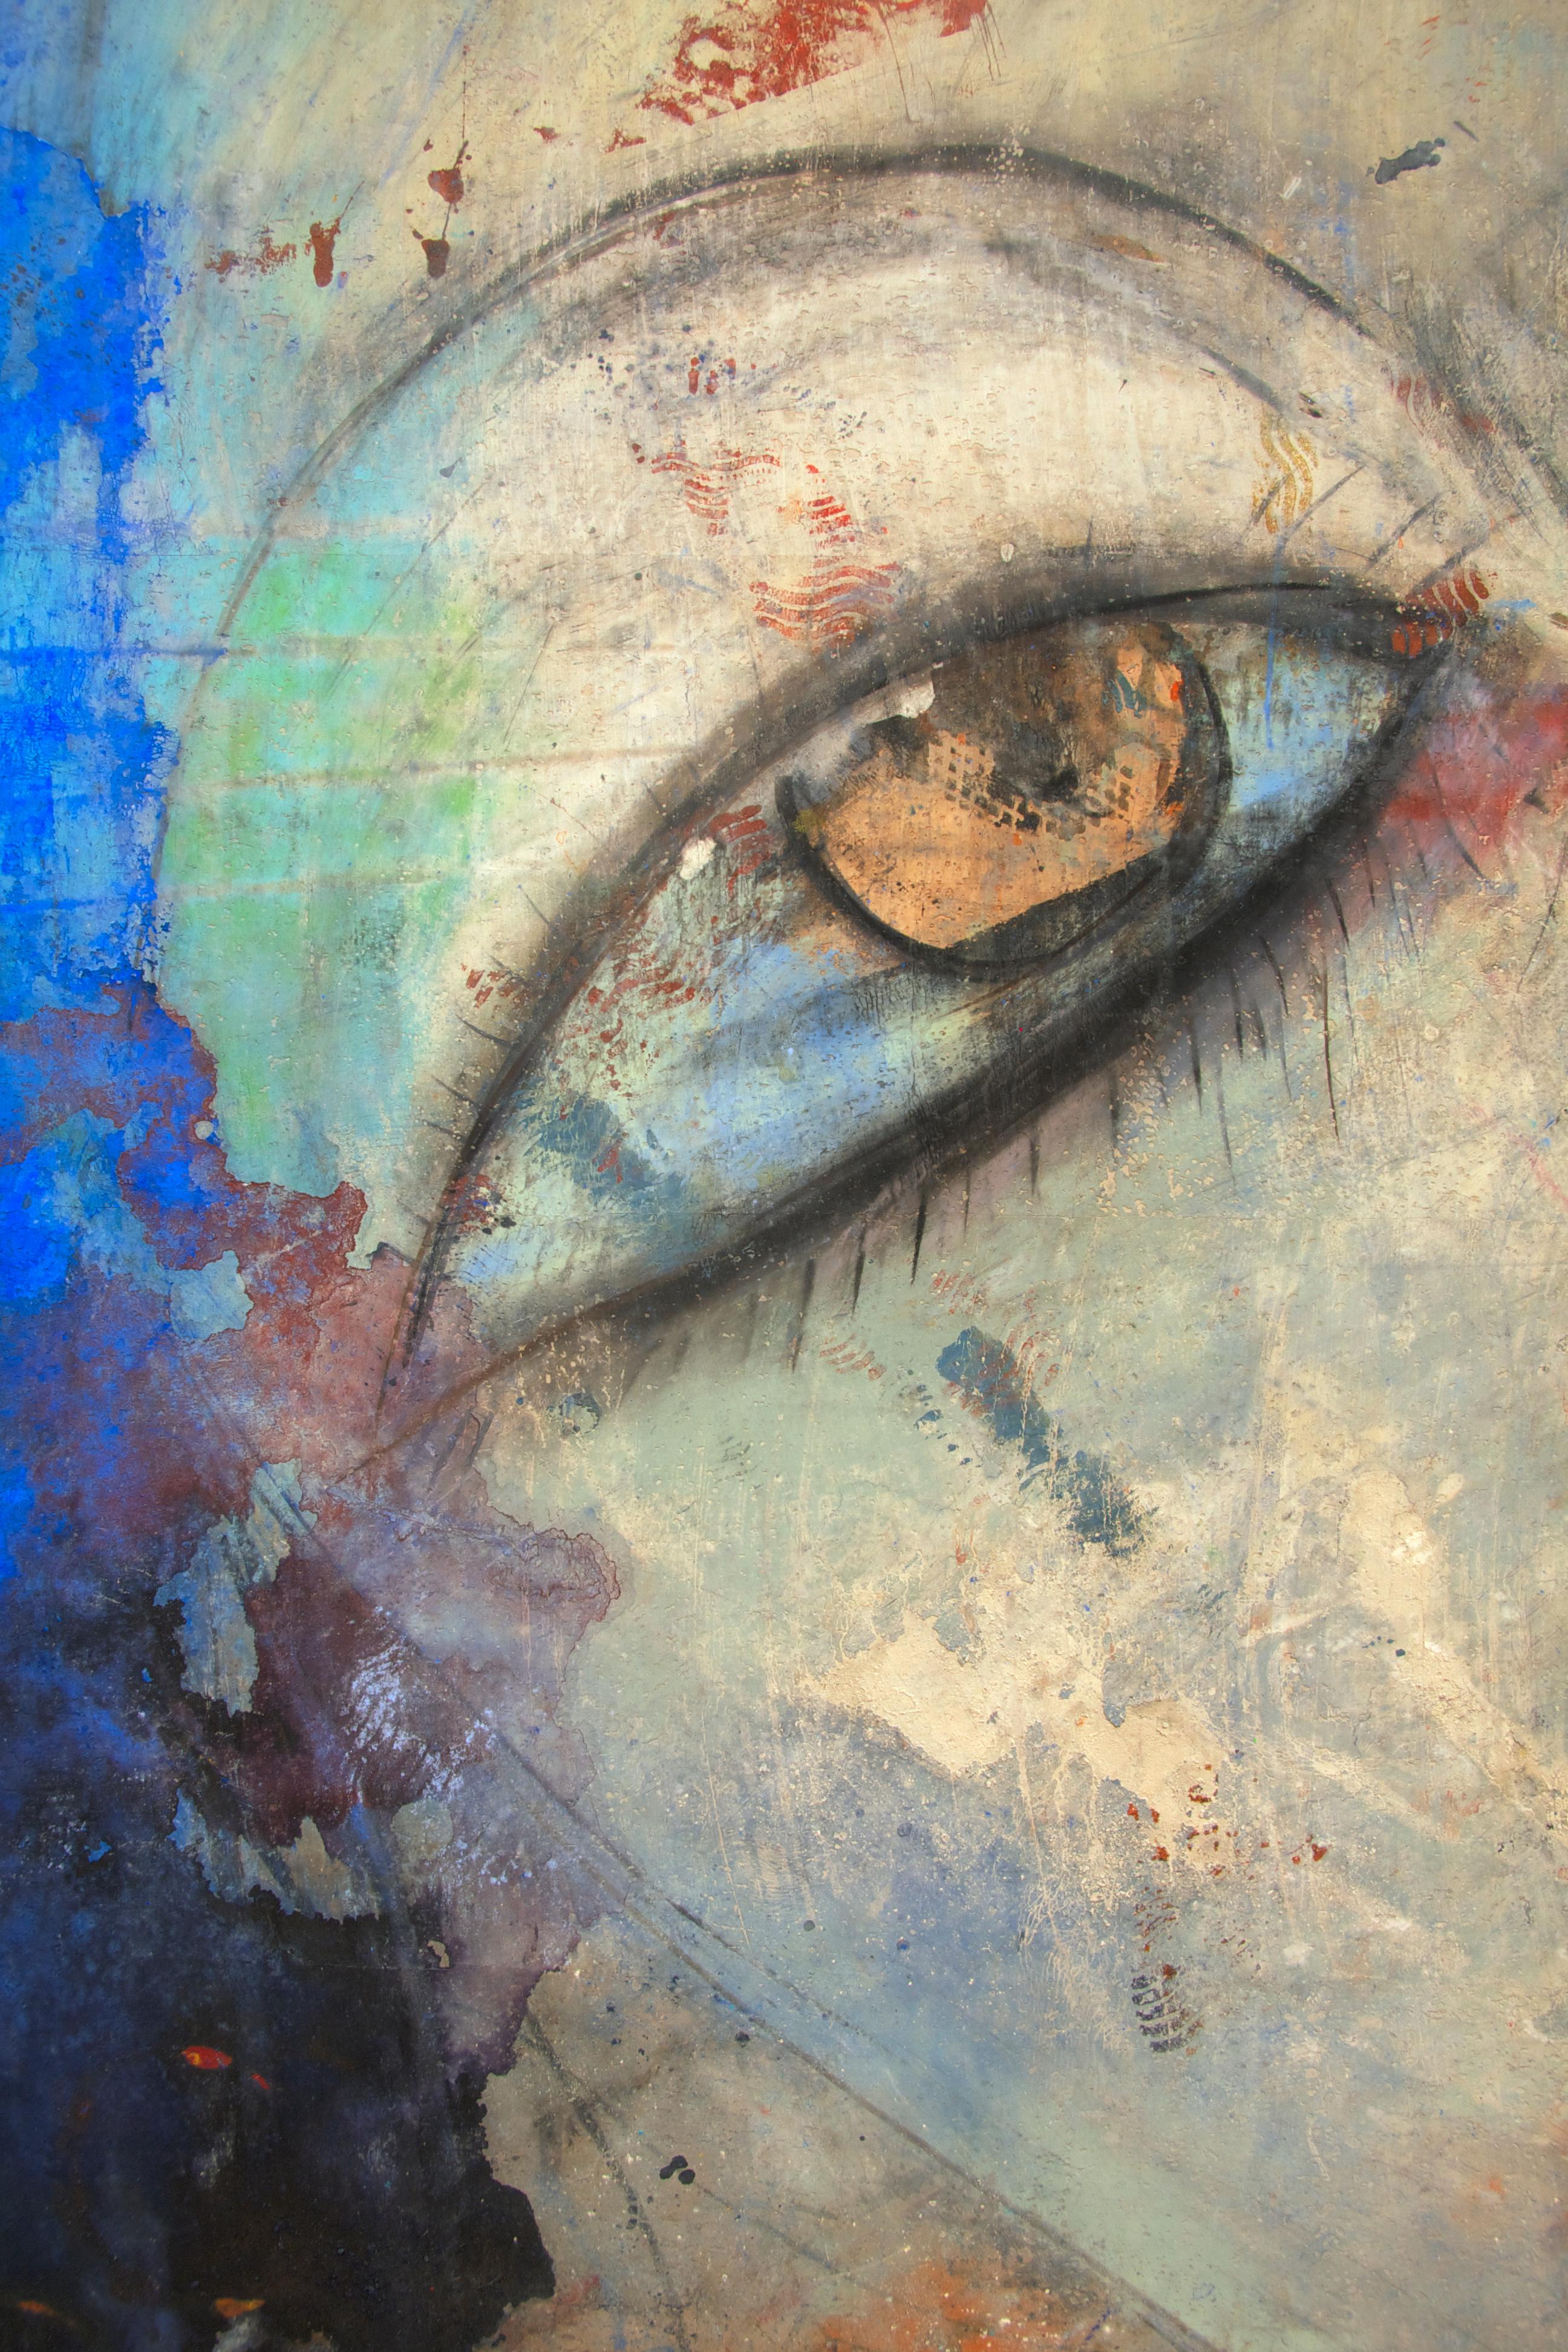 Der himmlische Blick – Painting von Jamali